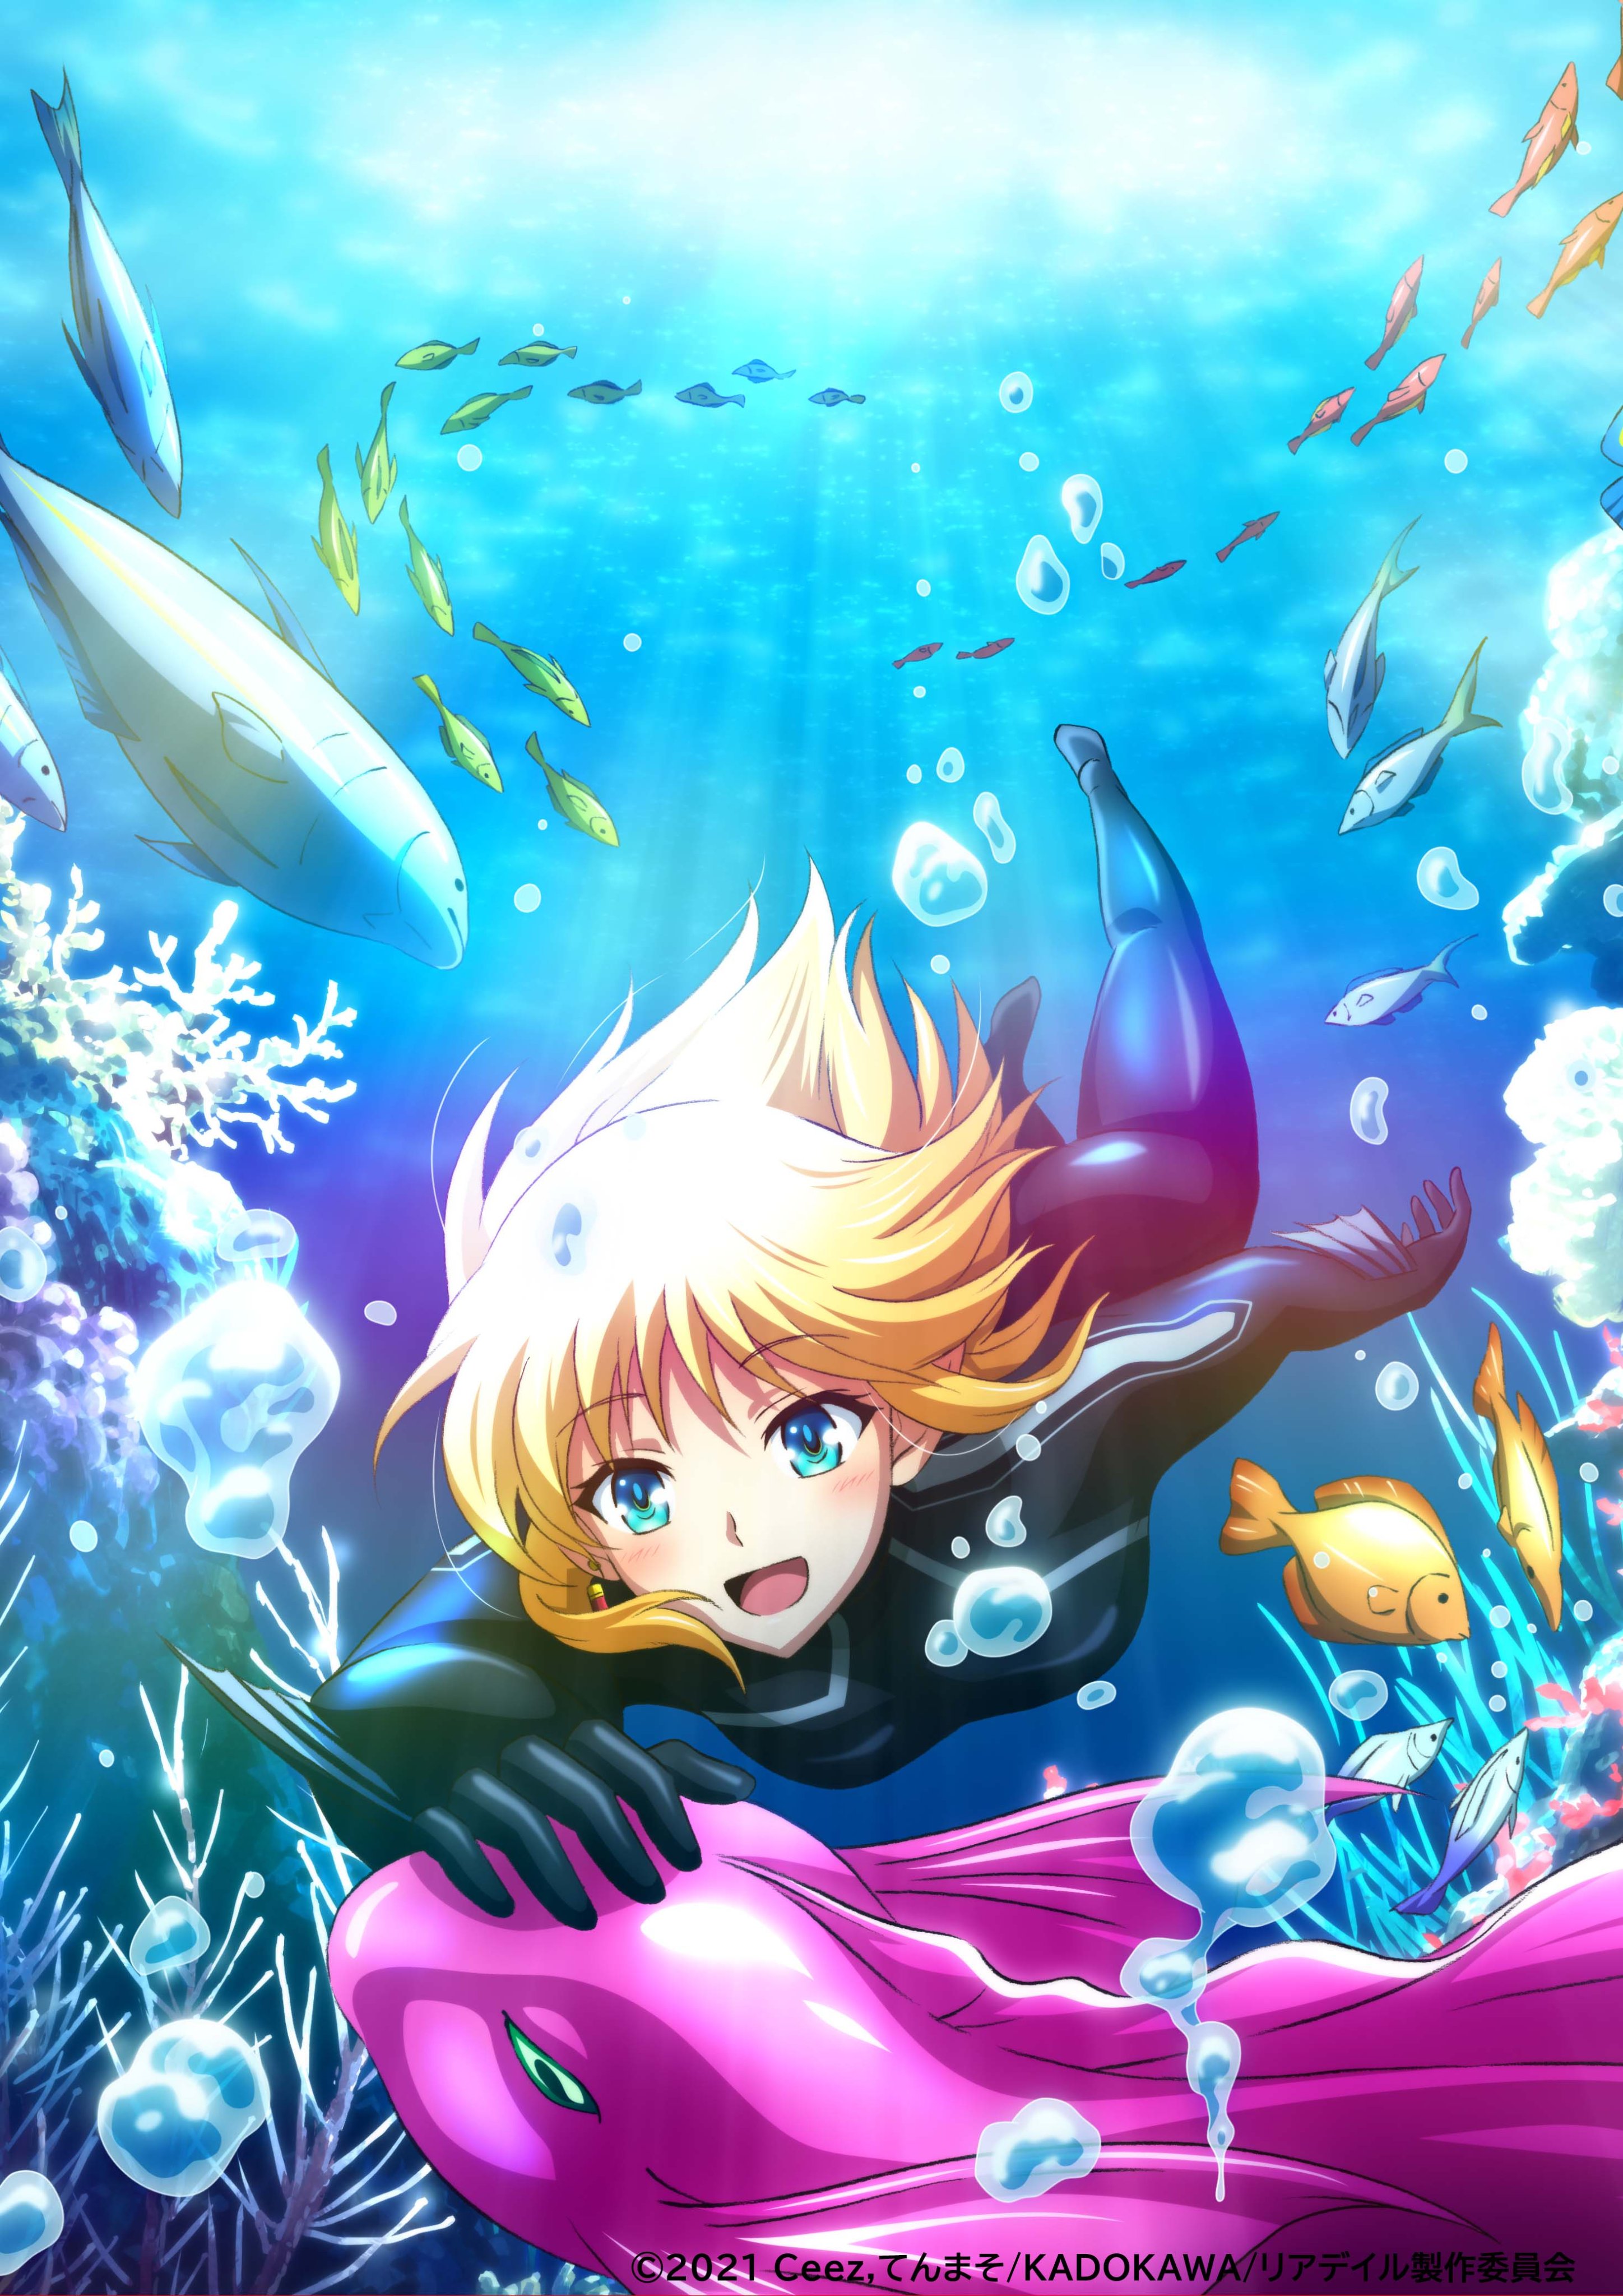 Ein Key Visual für den kommenden In the Land of Leadale TV-Anime mit der Hauptfigur, einer Elfe namens Cayna, die mit Fischen und Fantasiewesen in einem magischen Korallenriff taucht. 